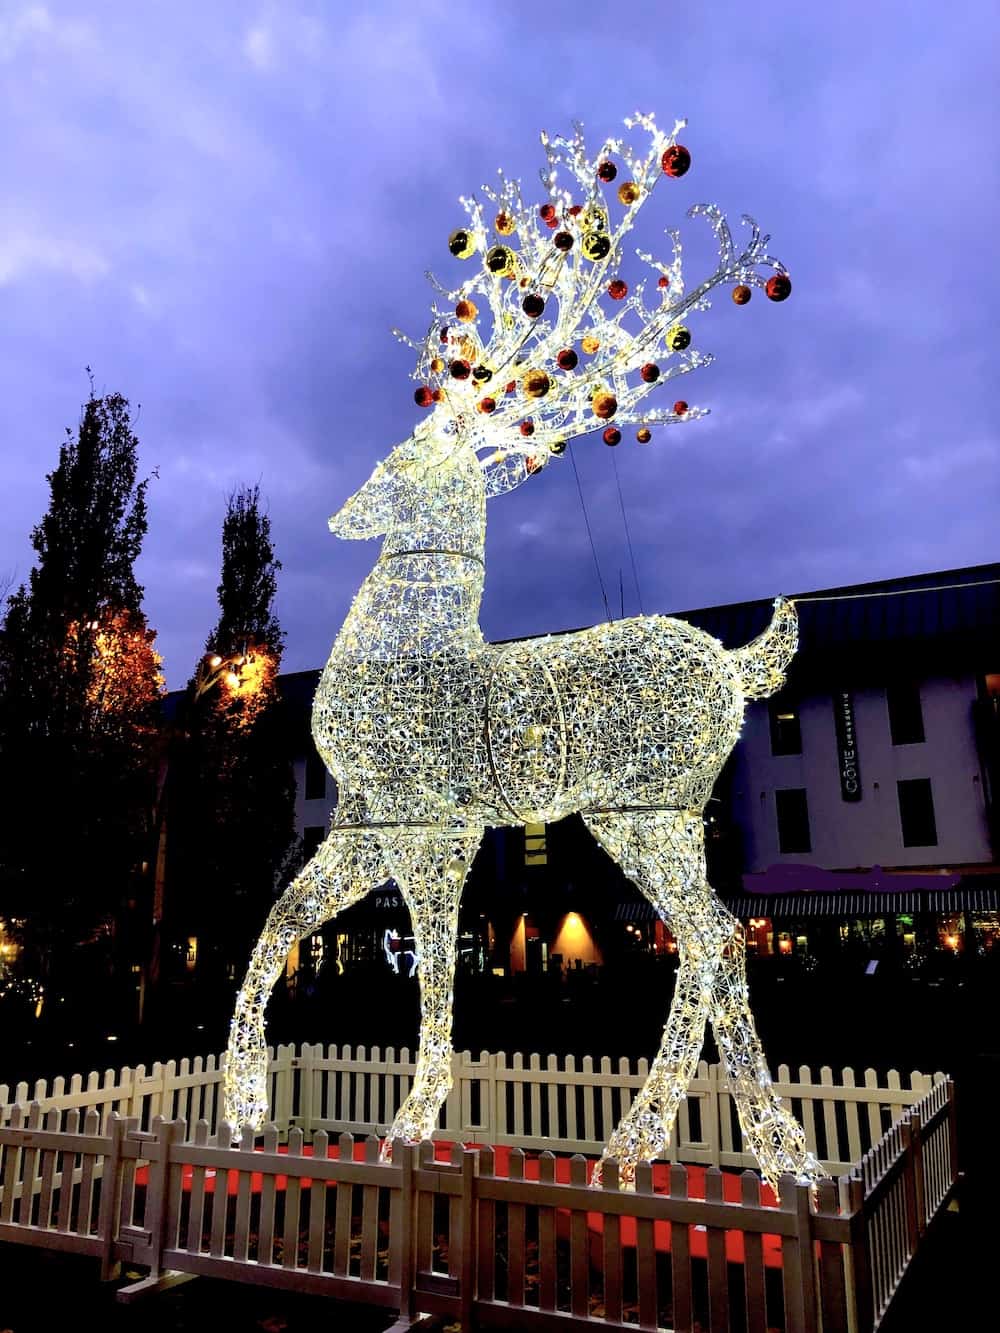 Large illuminated Christmas Reindeer at Cabot Circus